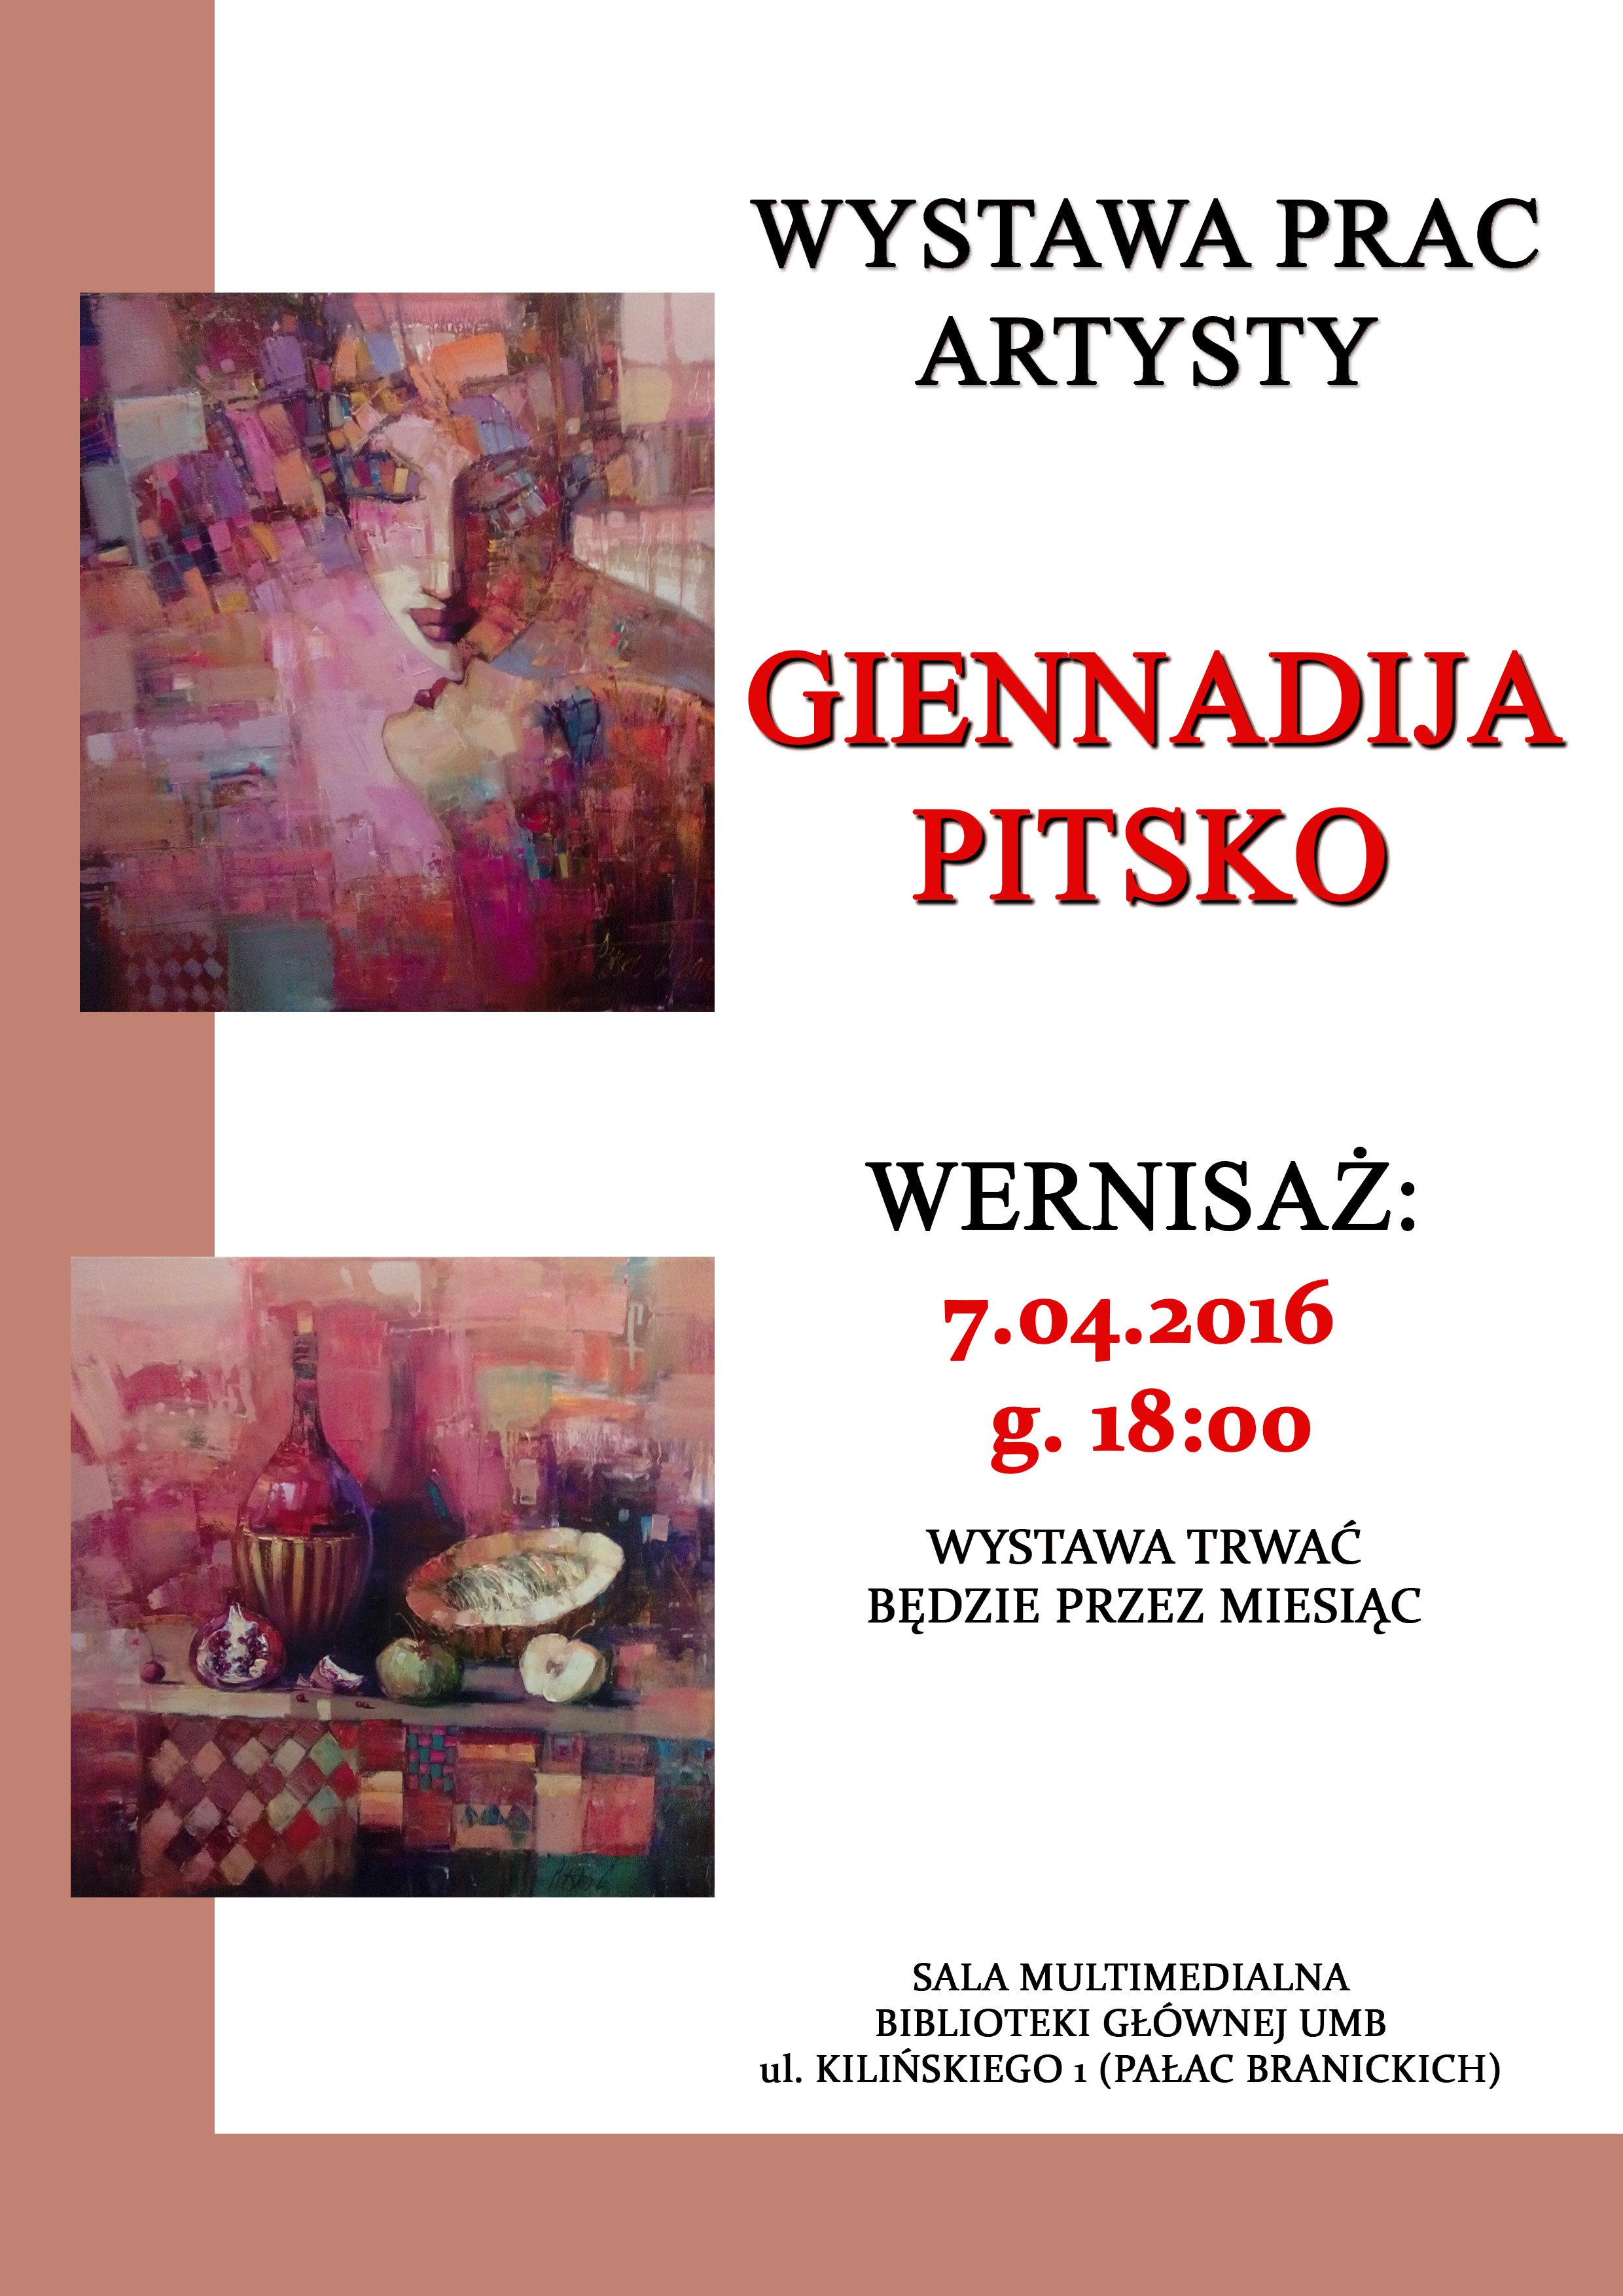 Wystawa prac Giennadija Pitsko